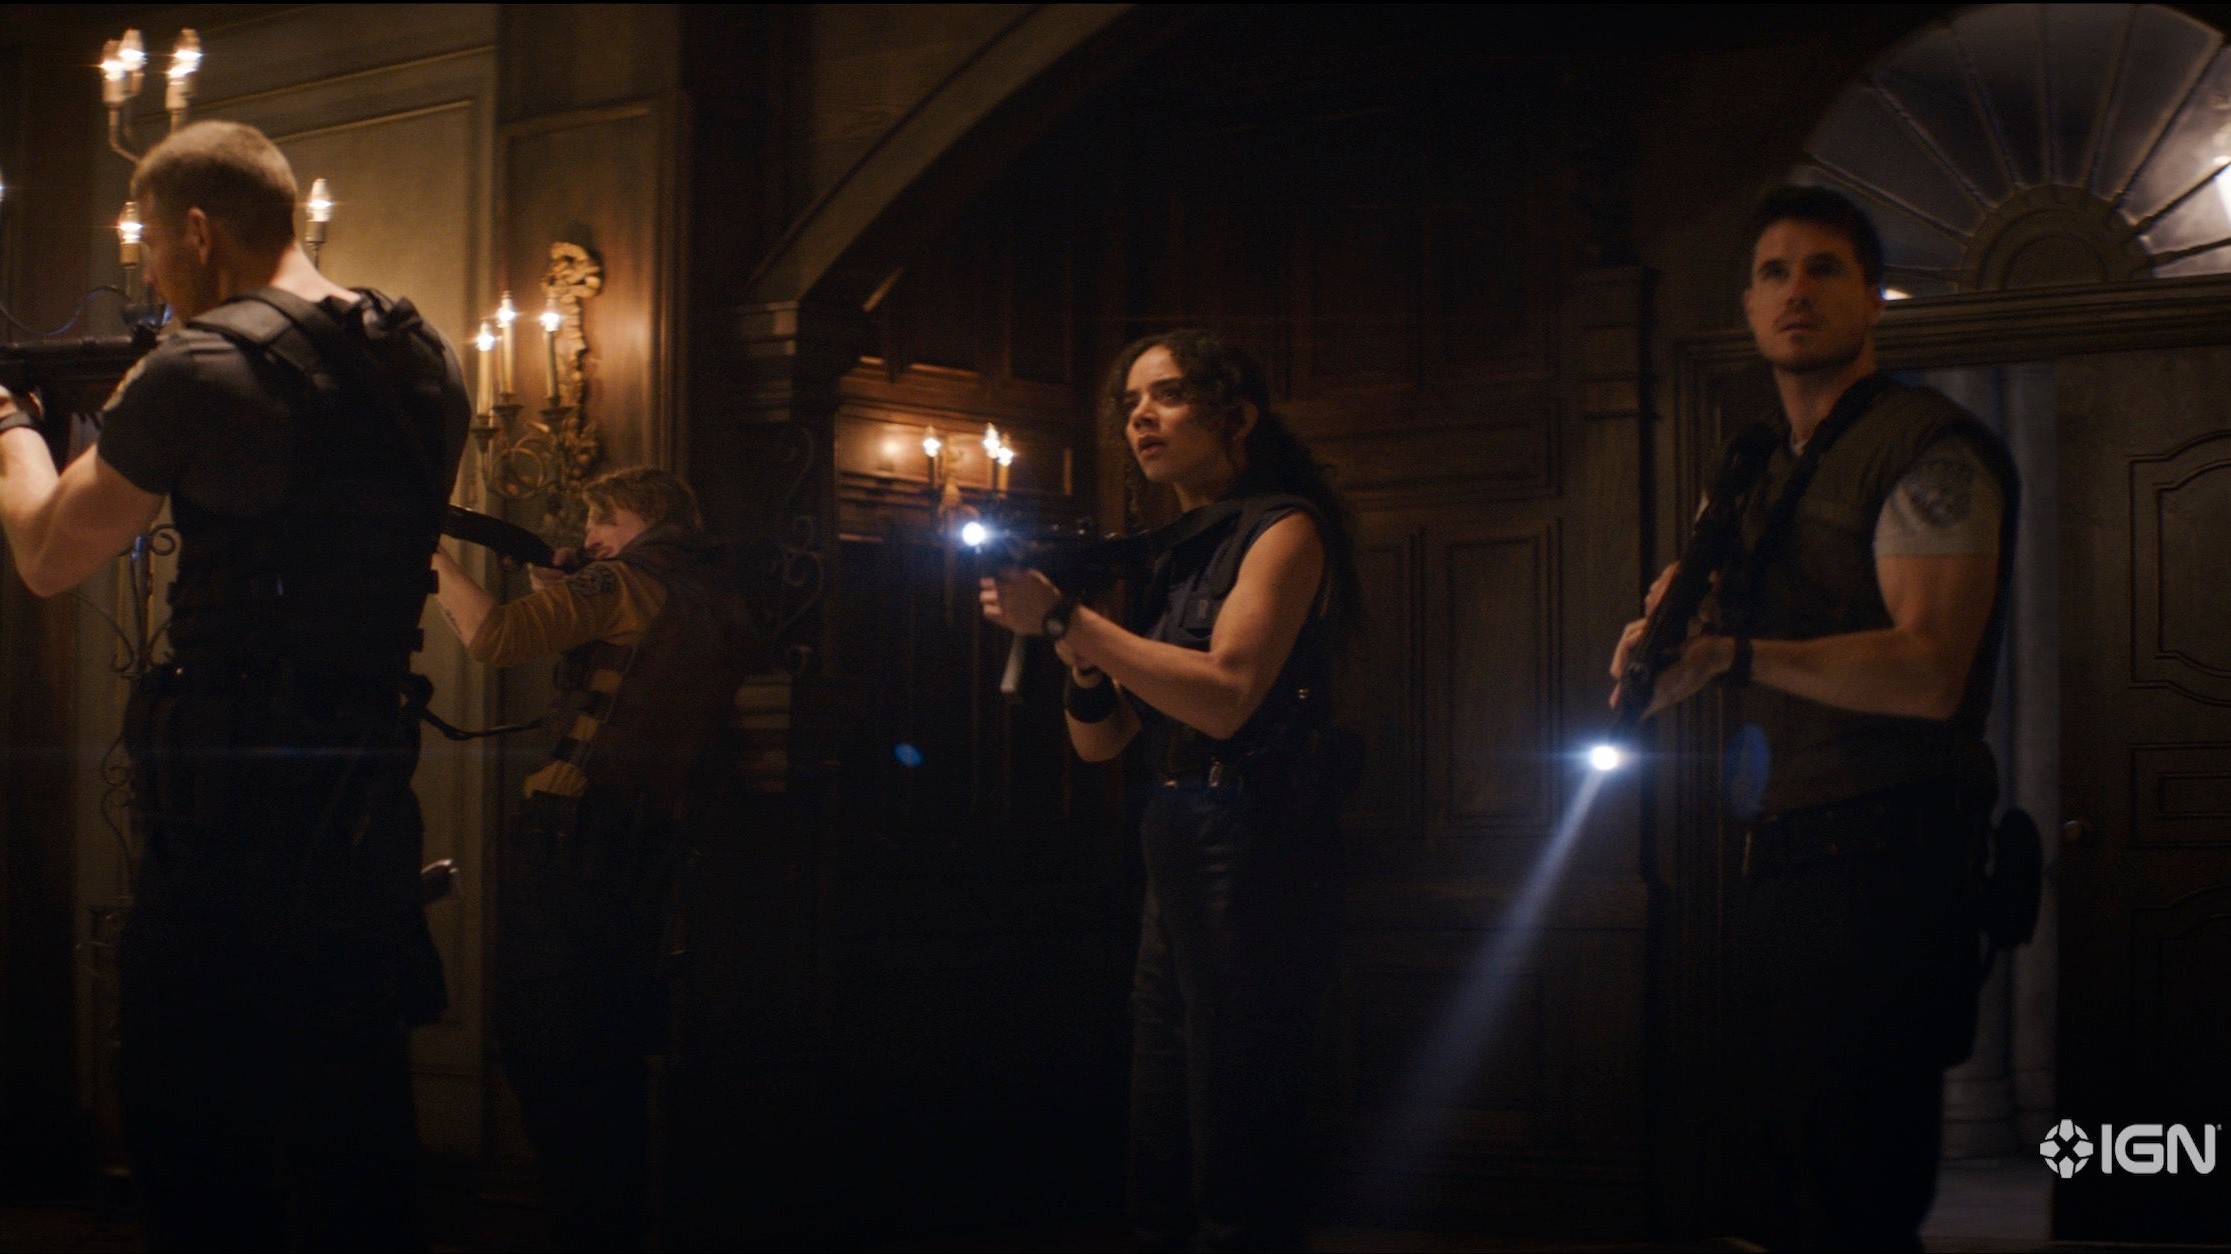 Operasi STARS termasuk Jill dan Chris saat mereka memasuki lorong mansion, senjata diangkat dan obor menyala